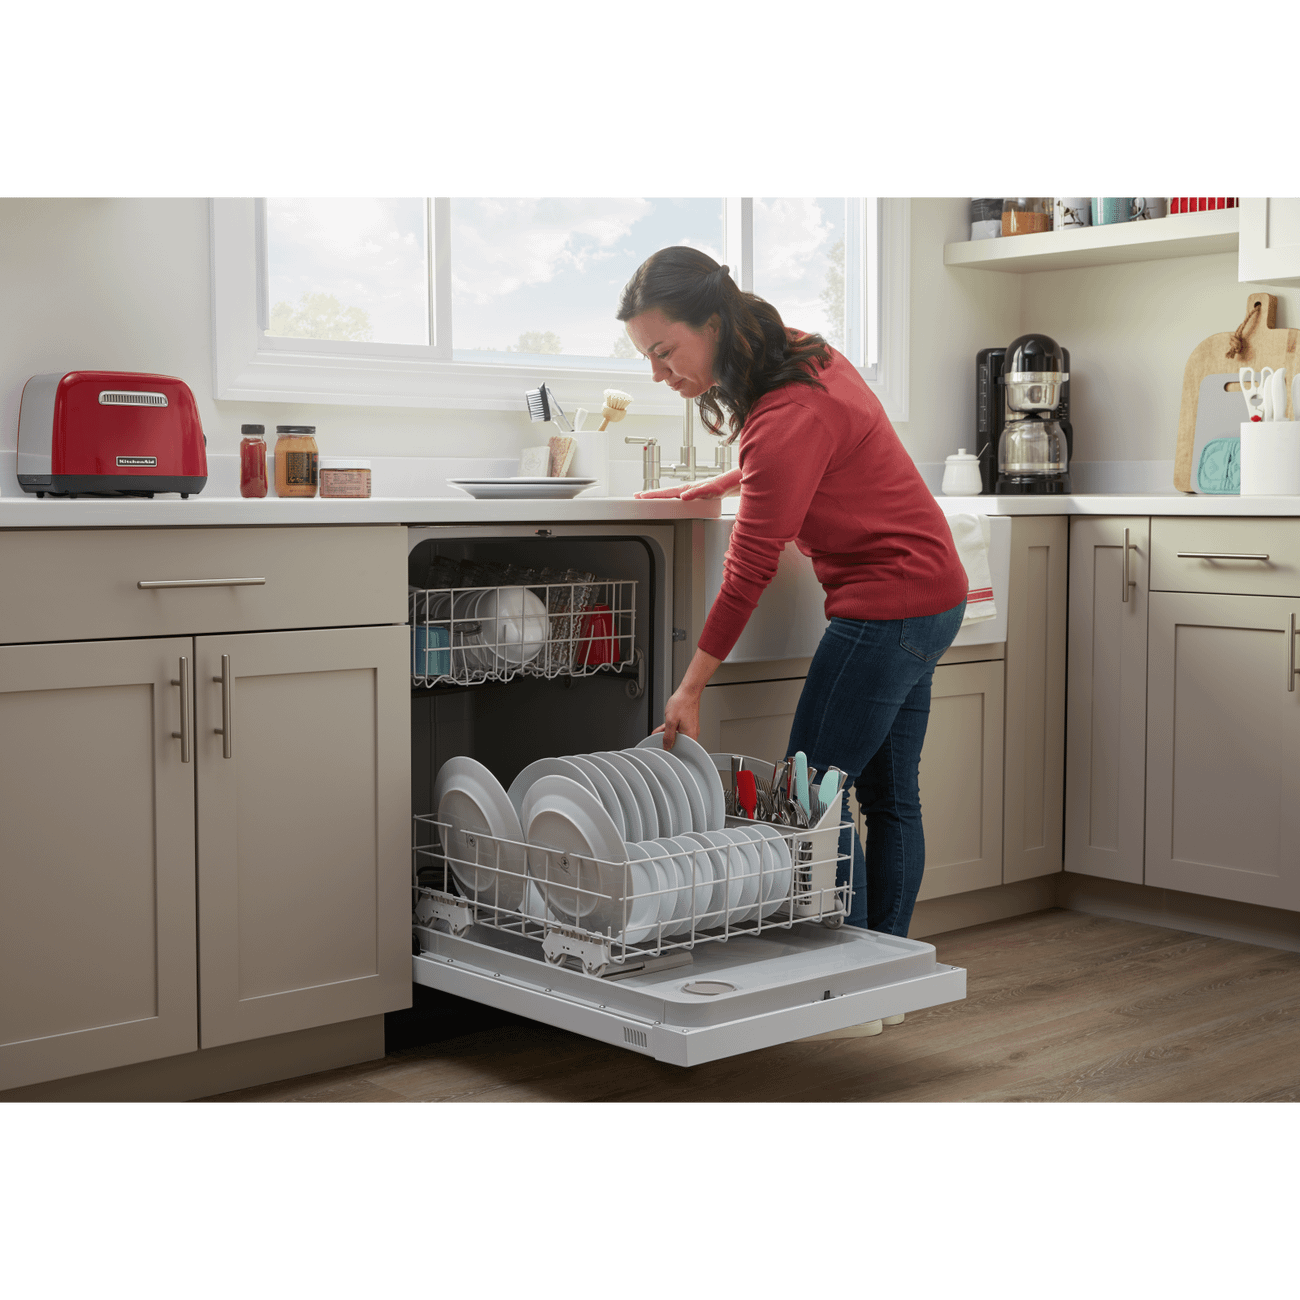 Amana Dishwasher Not Draining: 8 Easy Ways To Fix It Now